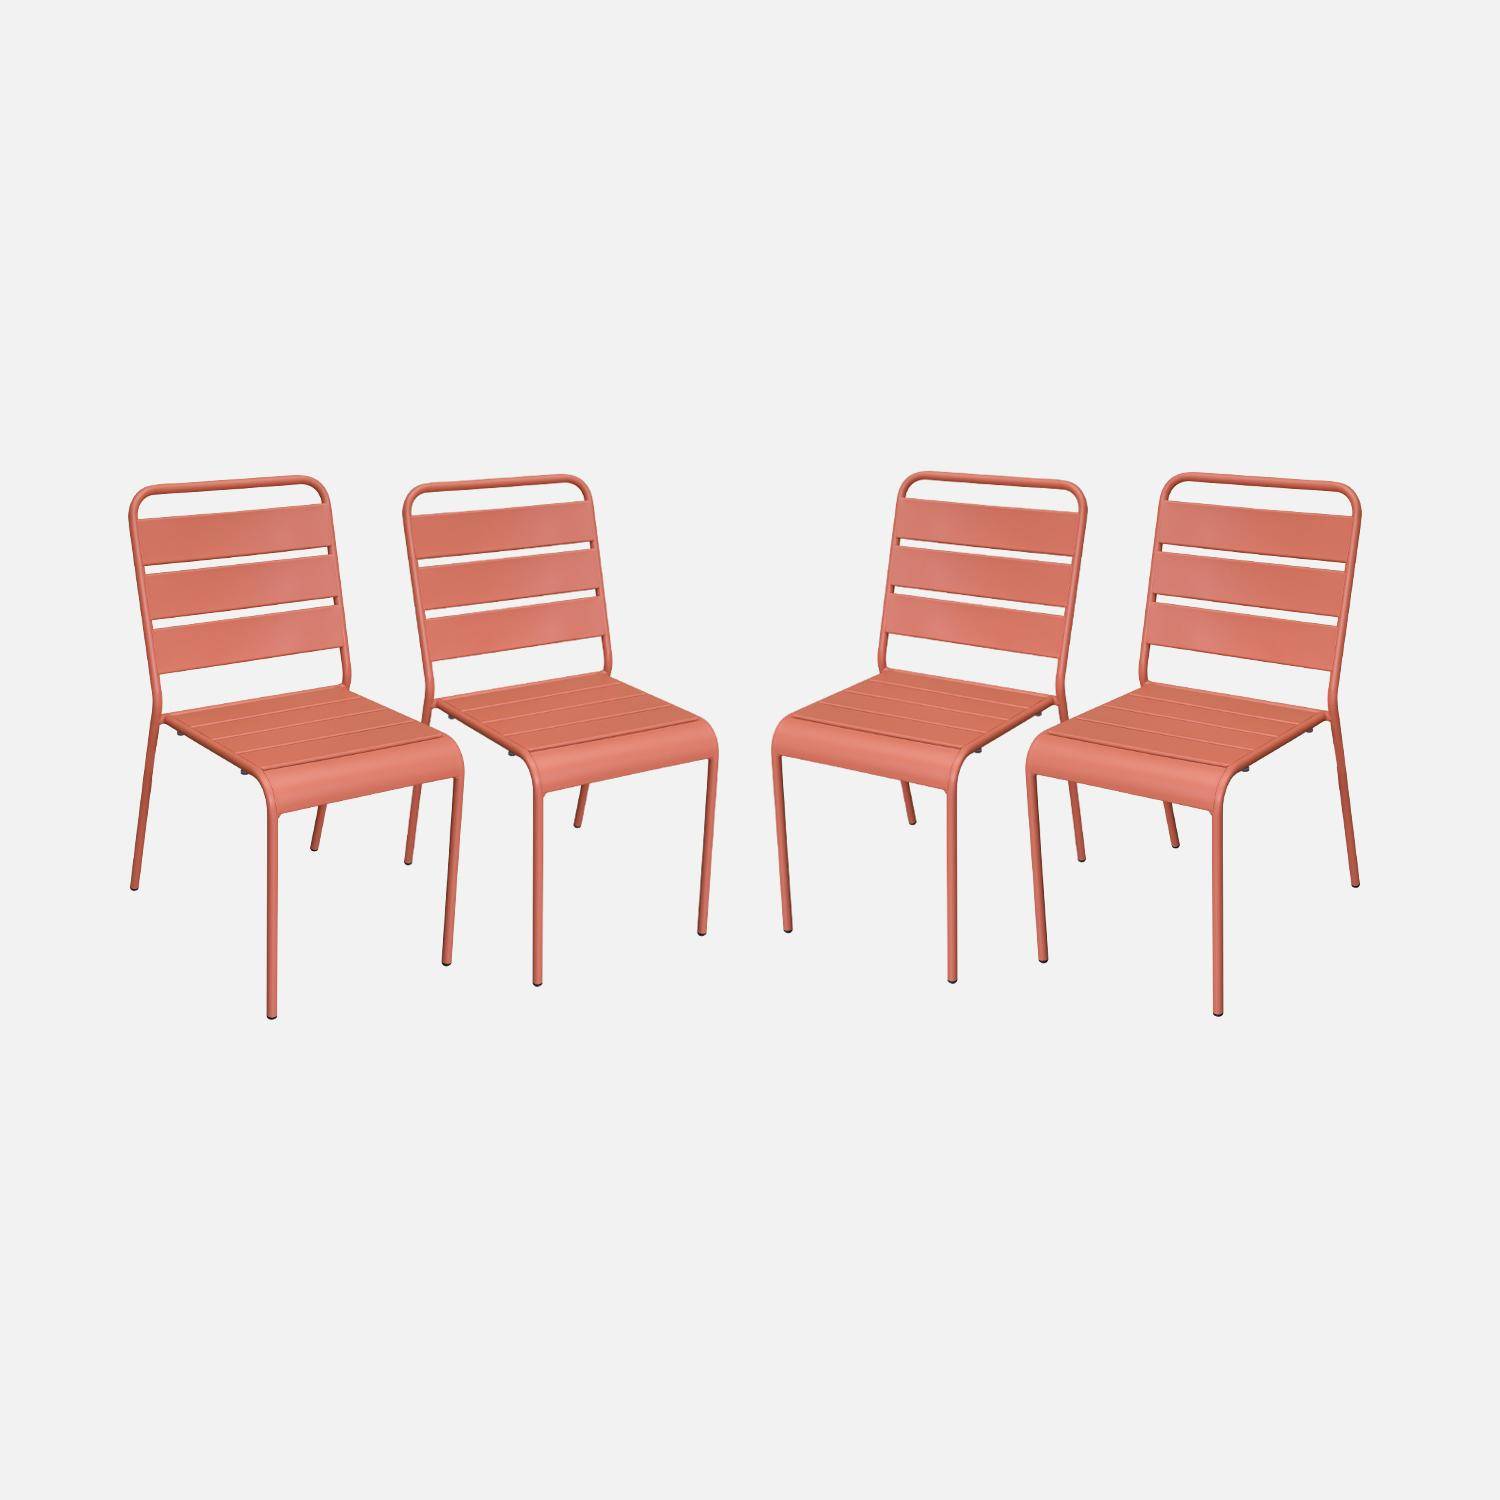 Lot de 4 chaises intérieur / extérieur en métal peinture antirouille empilables coloris rose saumon,sweeek,Photo1